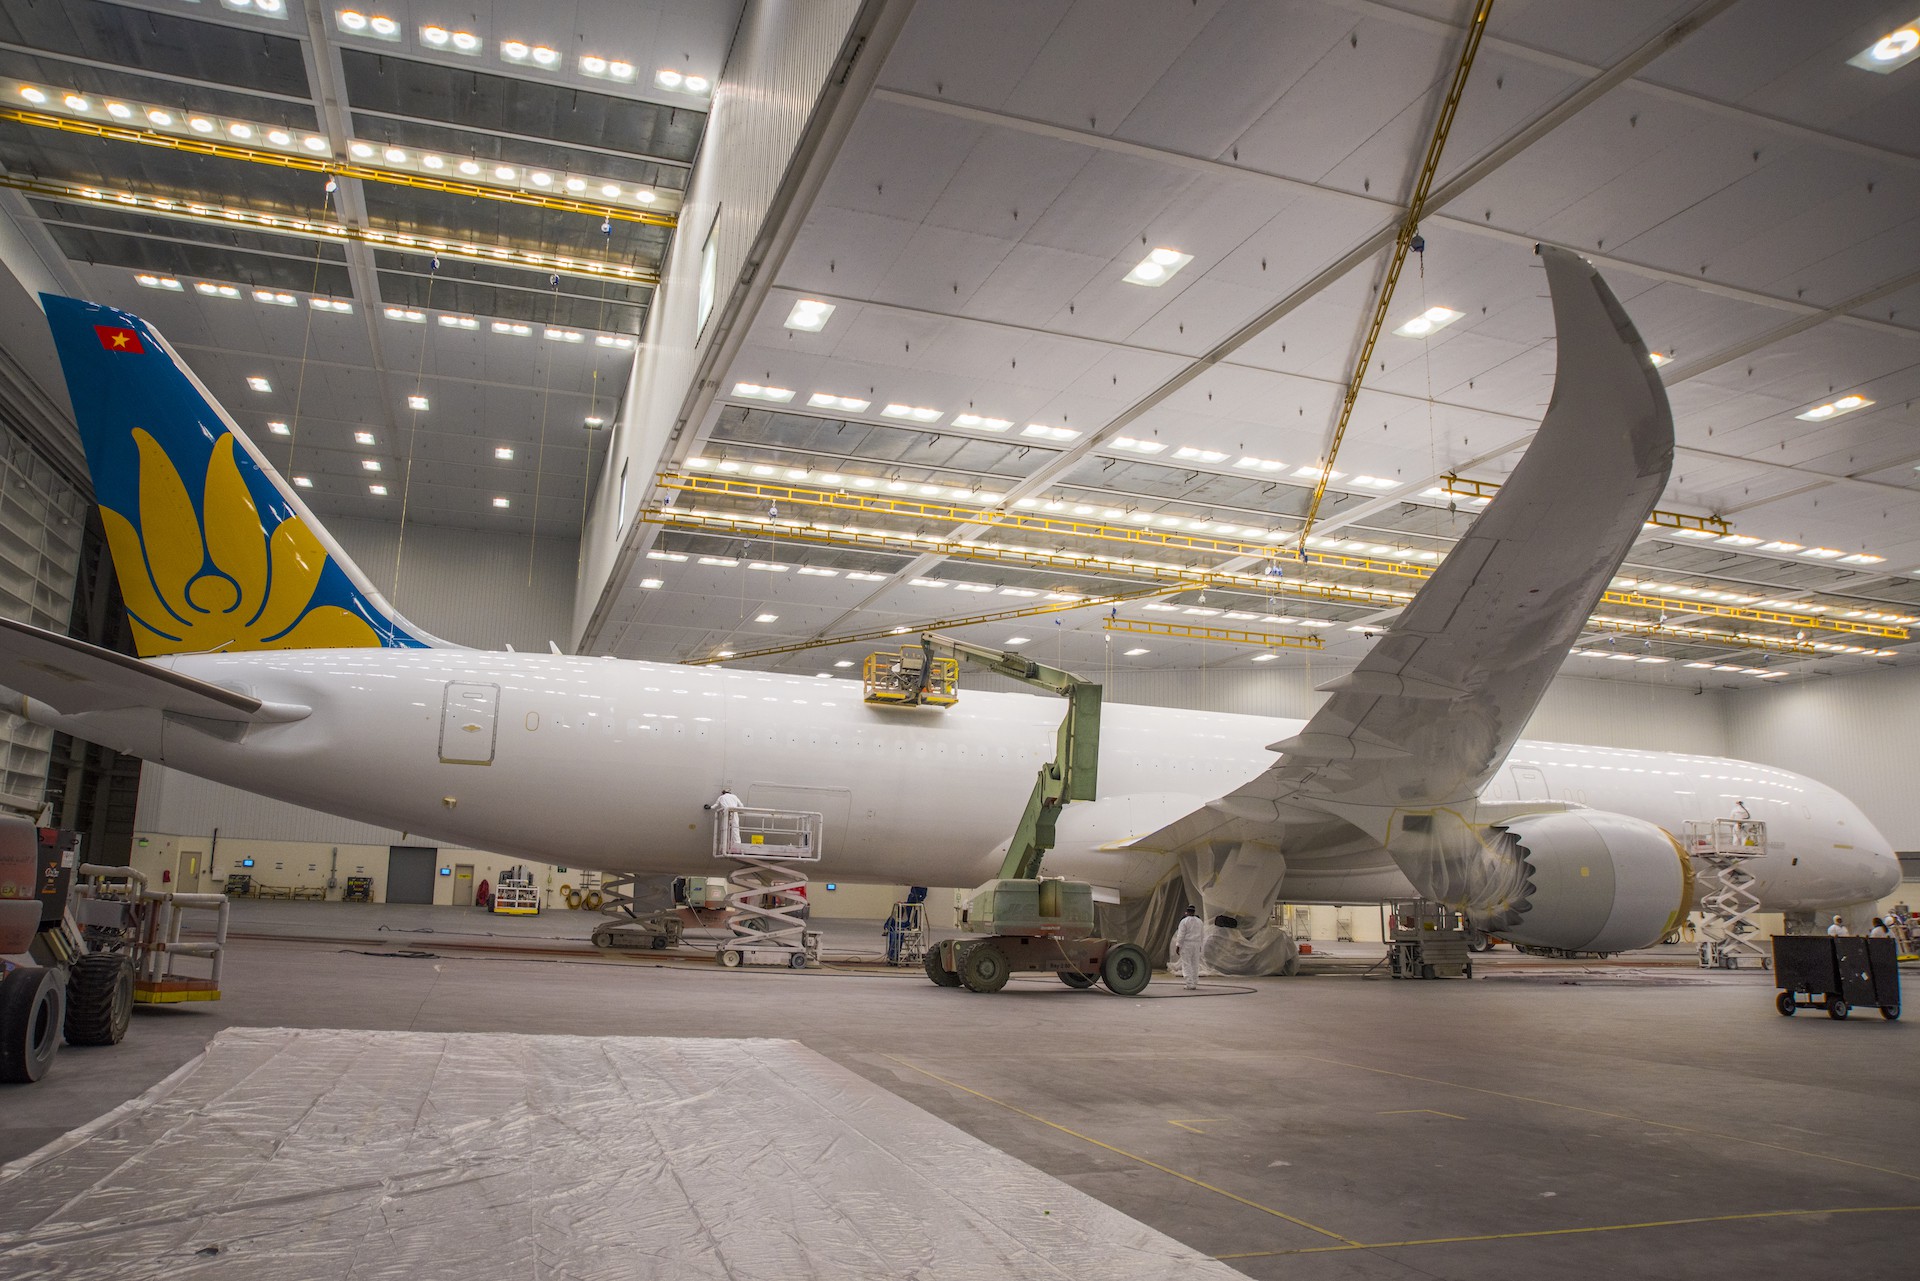 Clip cận cảnh quá trình lắp ráp, sơn siêu máy bay Boeing 787-10 cho Việt Nam - Ảnh 2.